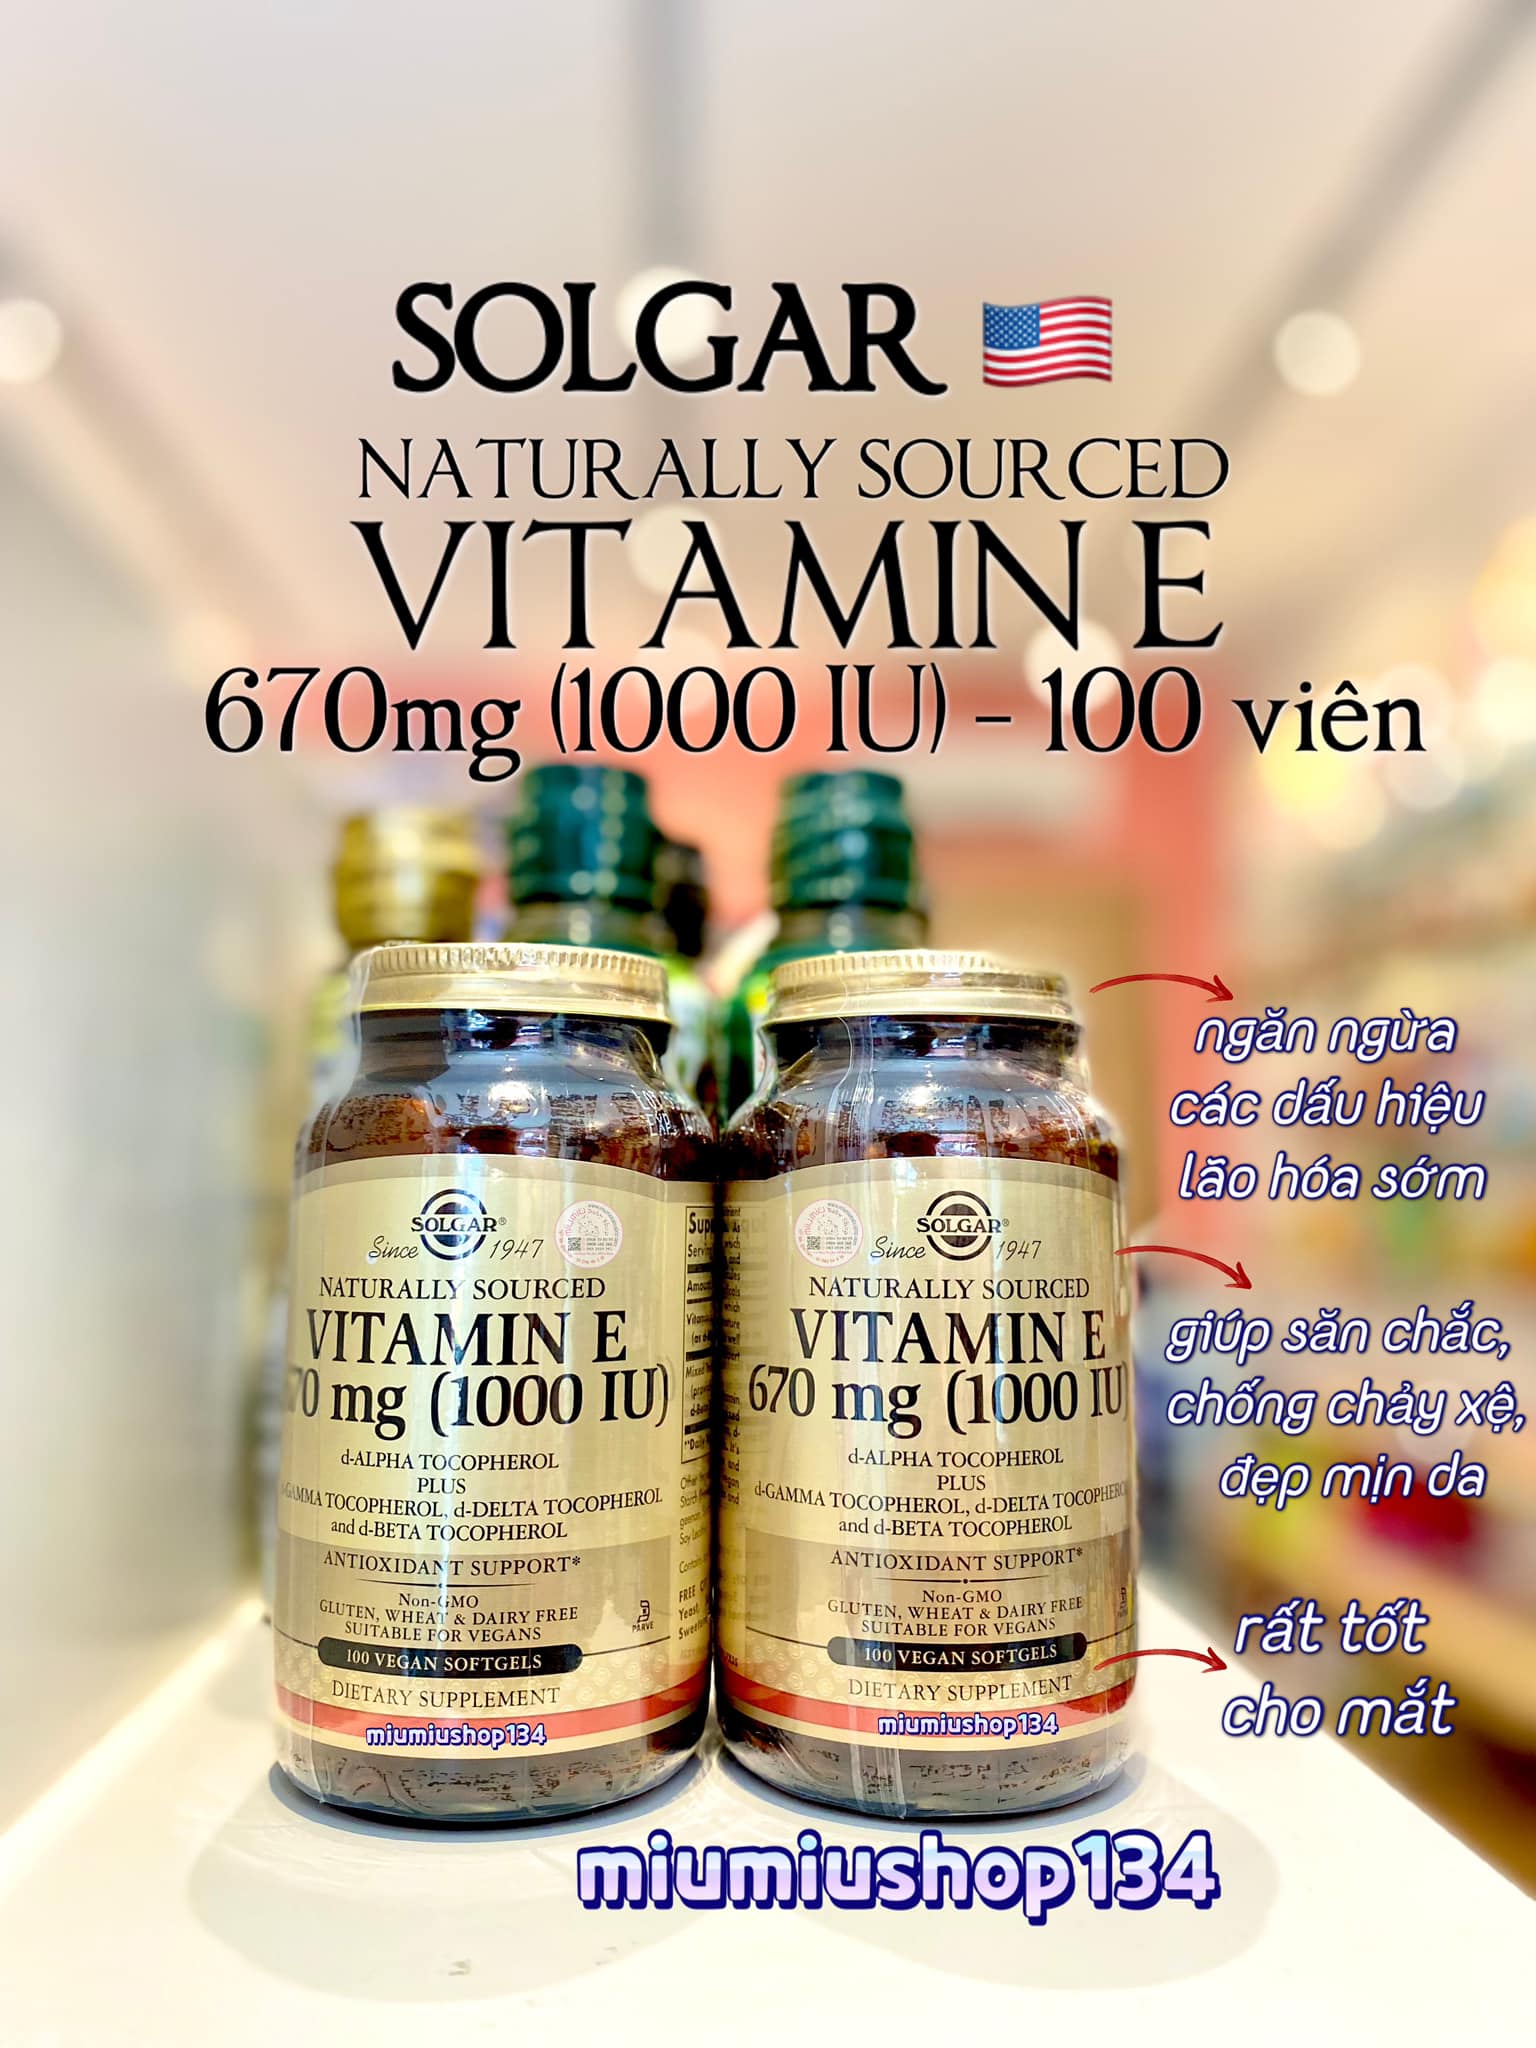 Solgar Vitamin E có tác dụng tăng cường hệ miễn dịch? 
